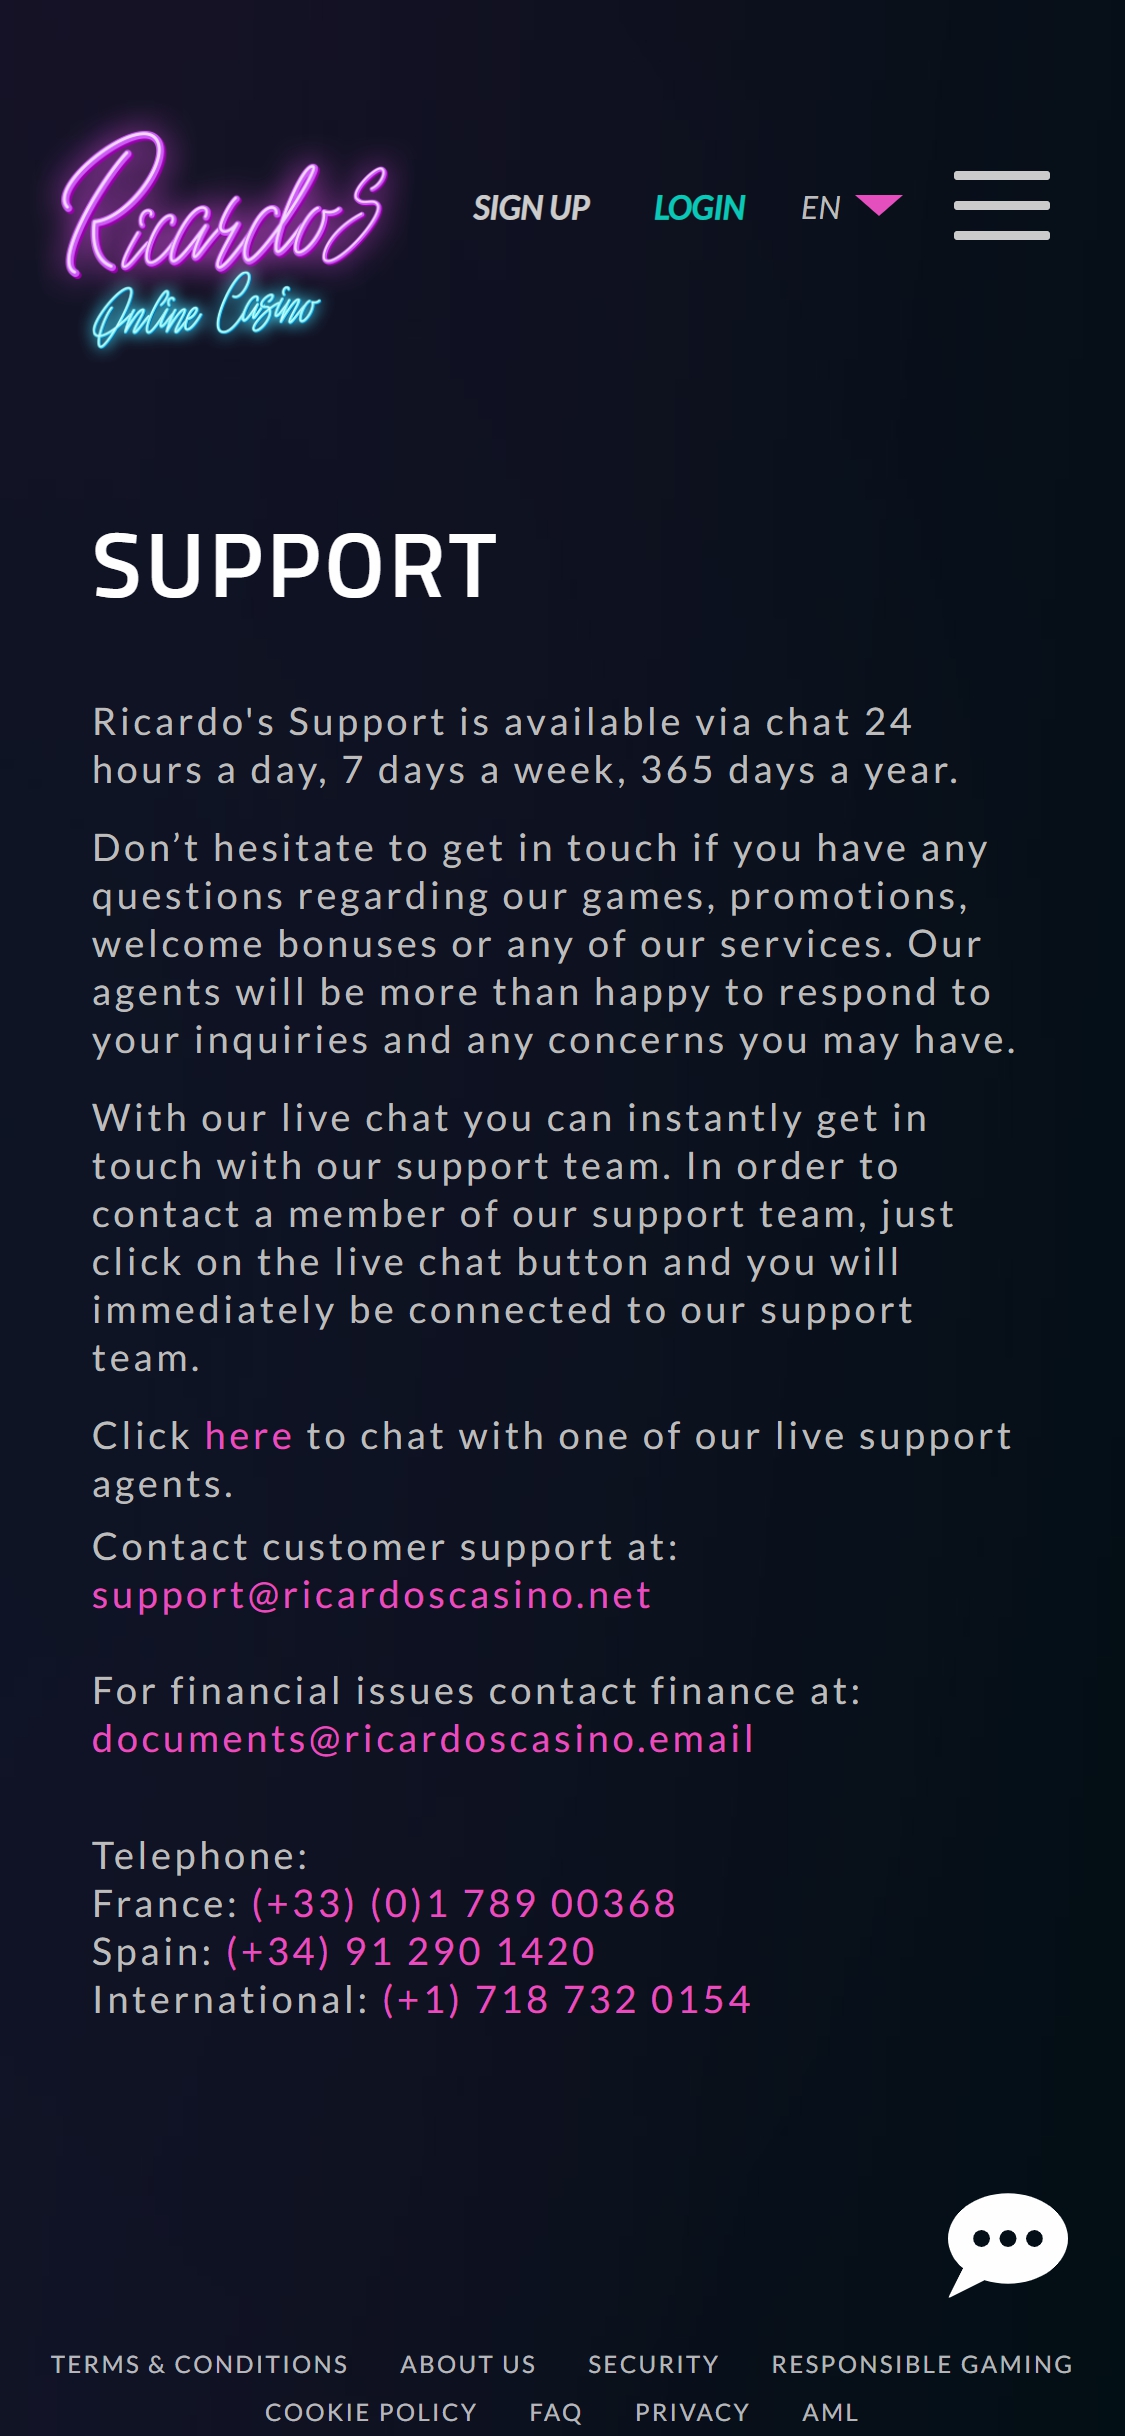 Ricardos Casino Mobile Support Review